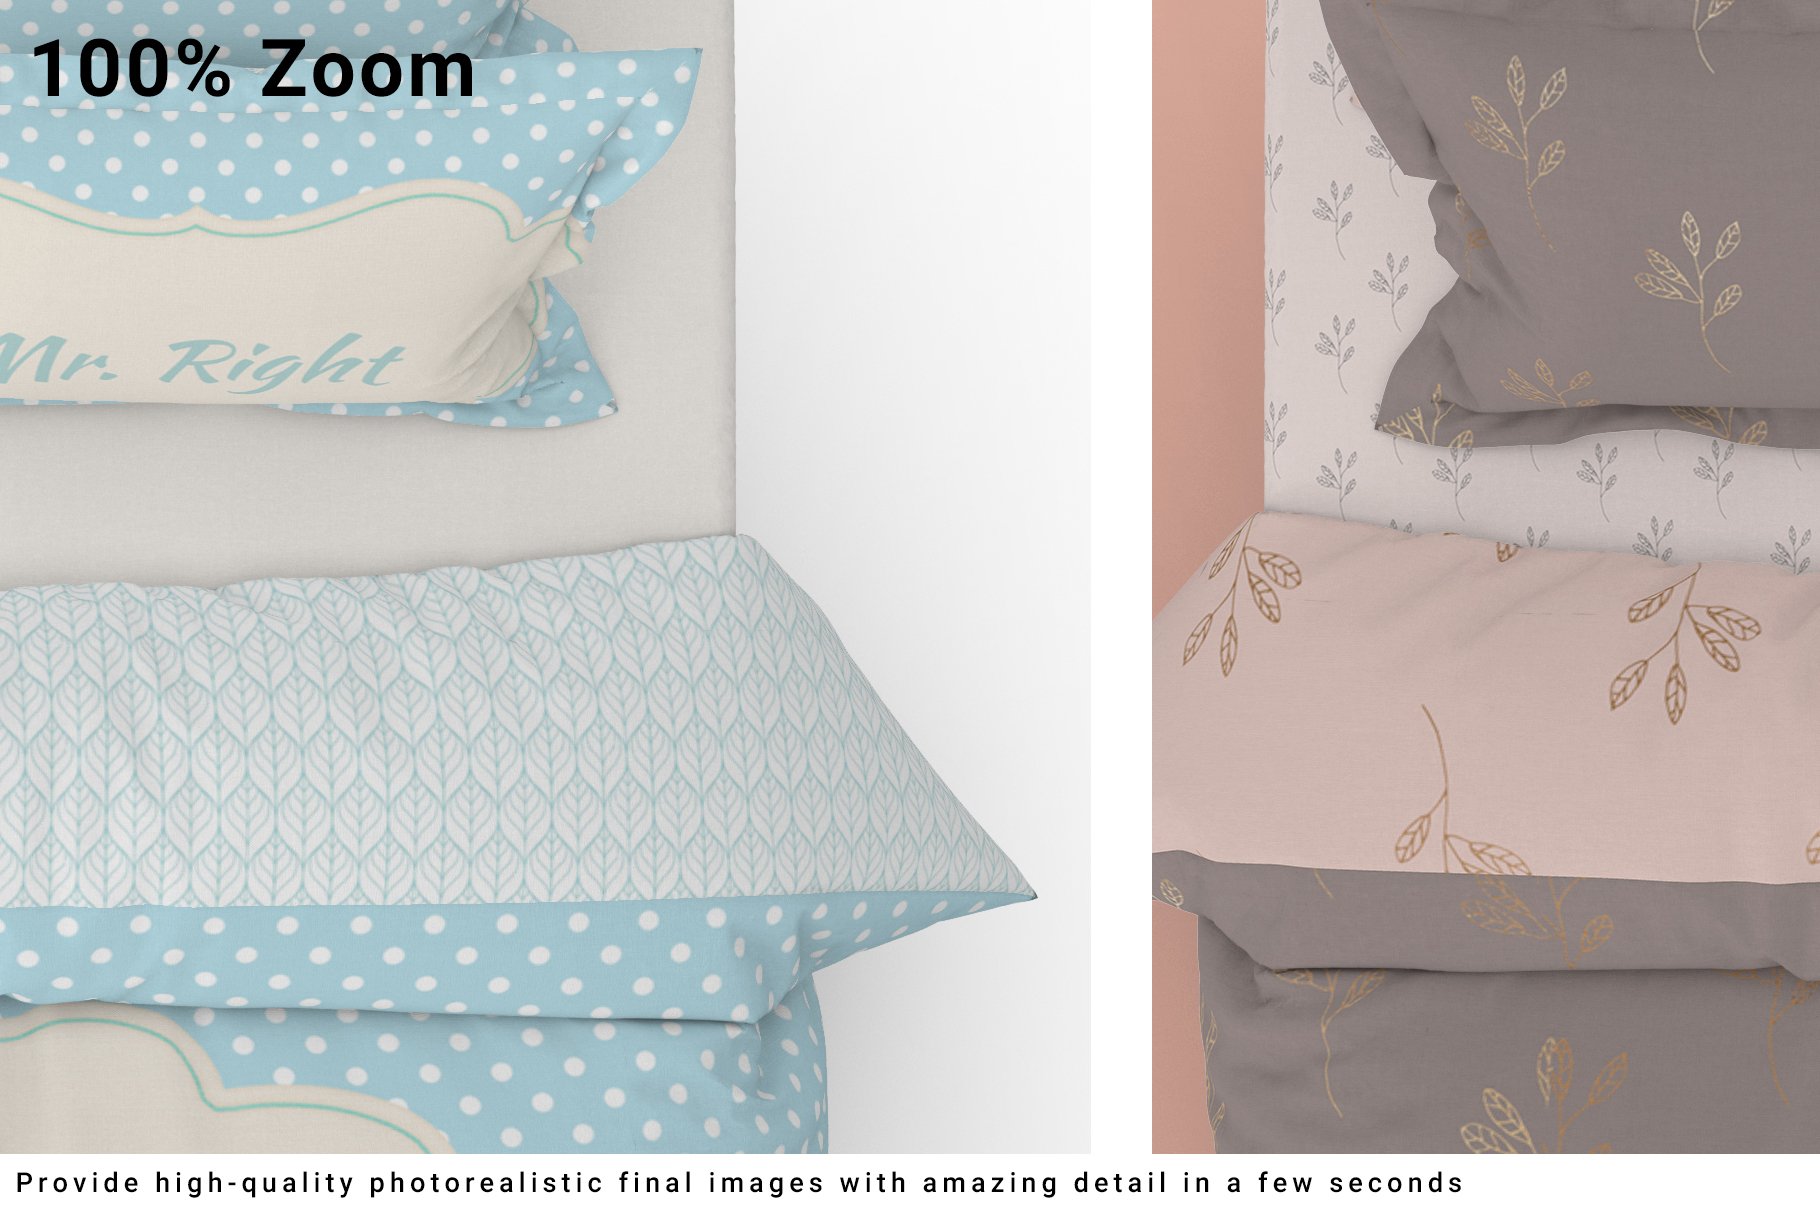 Bed Linens Mockup Set 4